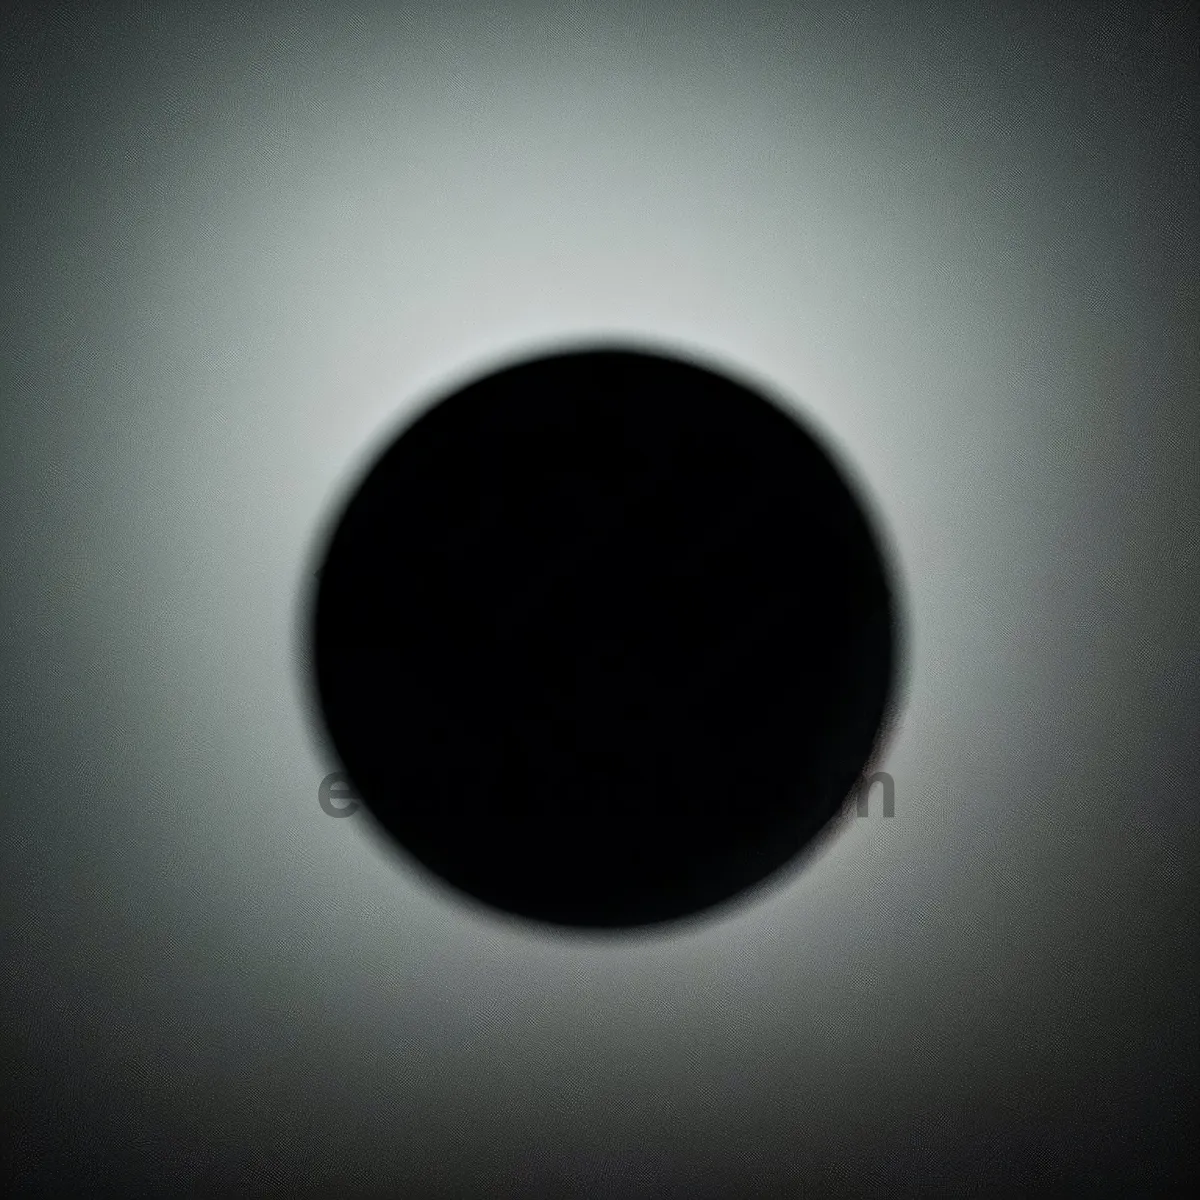 Picture of Spectacular Black Hole Design Illuminates Space